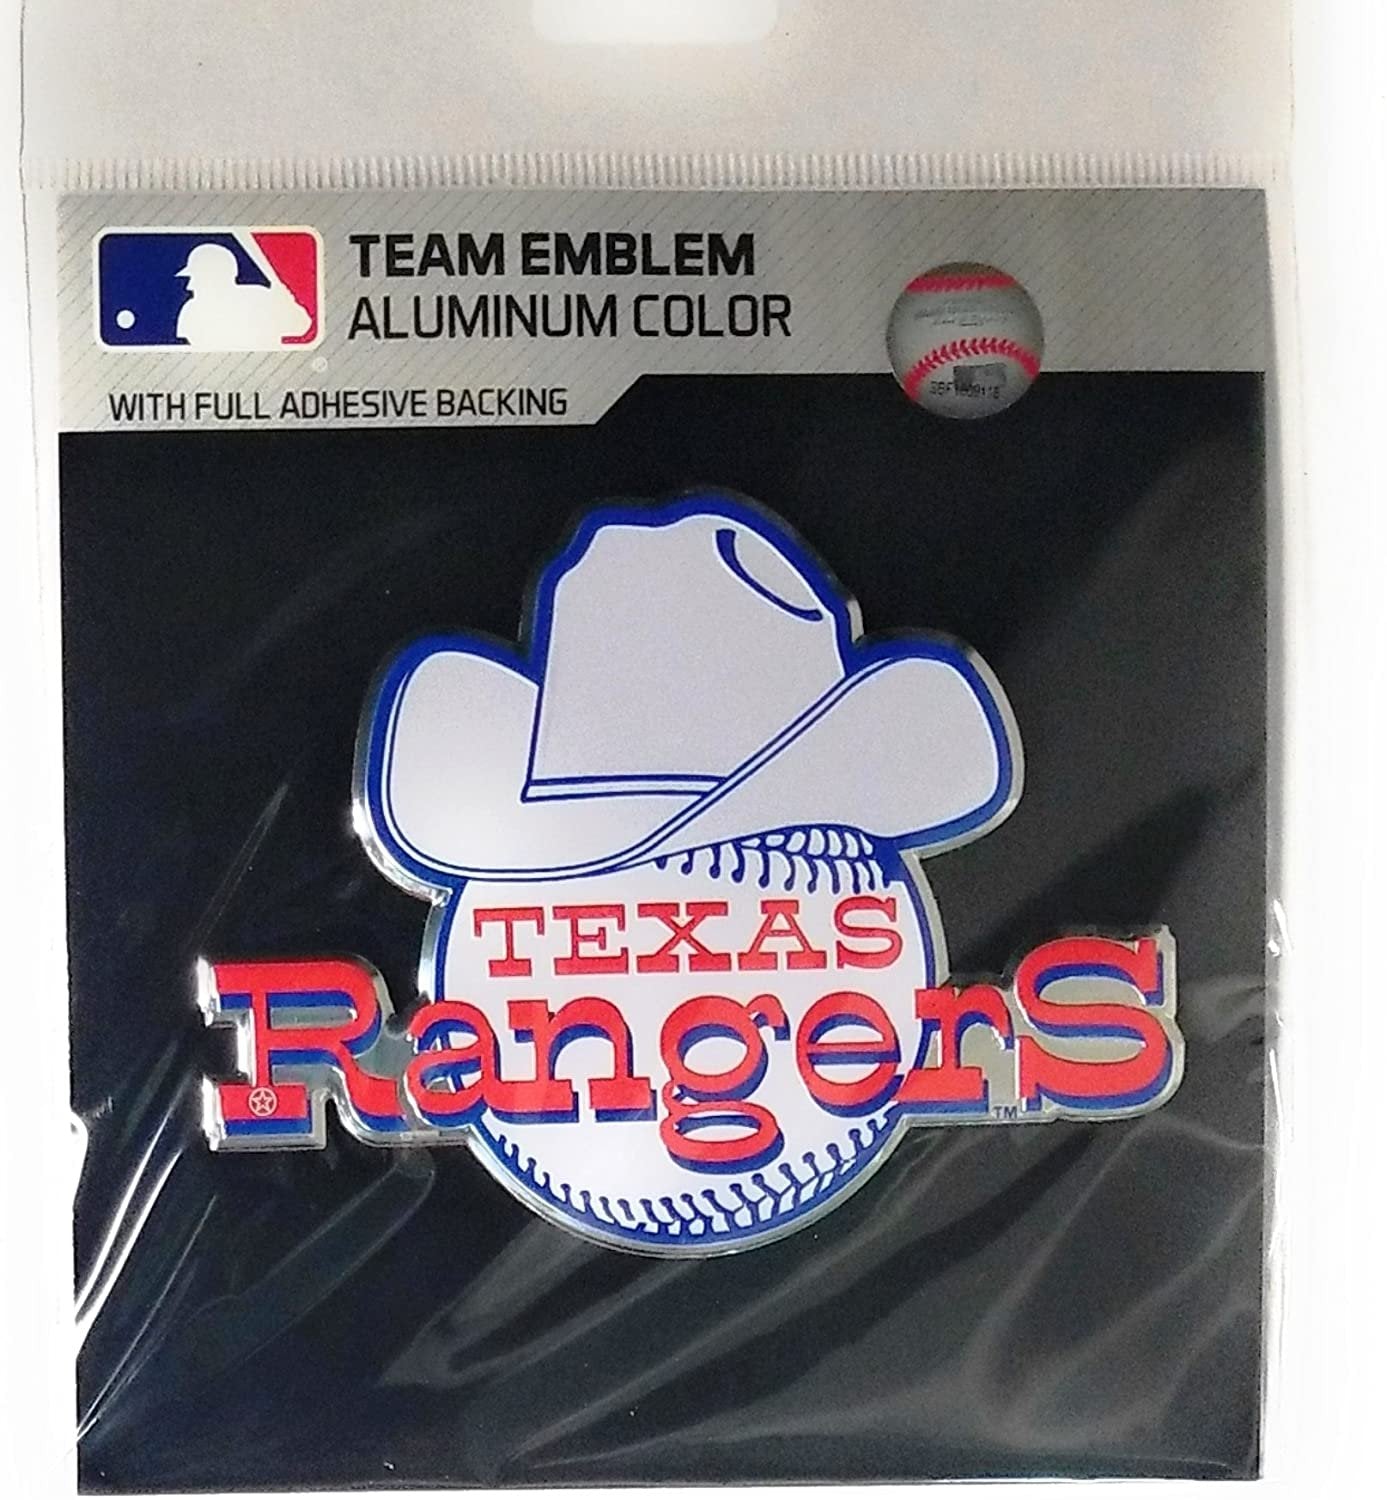 Texas Rangers Premium Aluminum Metal Raised Auto Emblem, Retro Logo, Color Embossed, Full Adhesive Backing